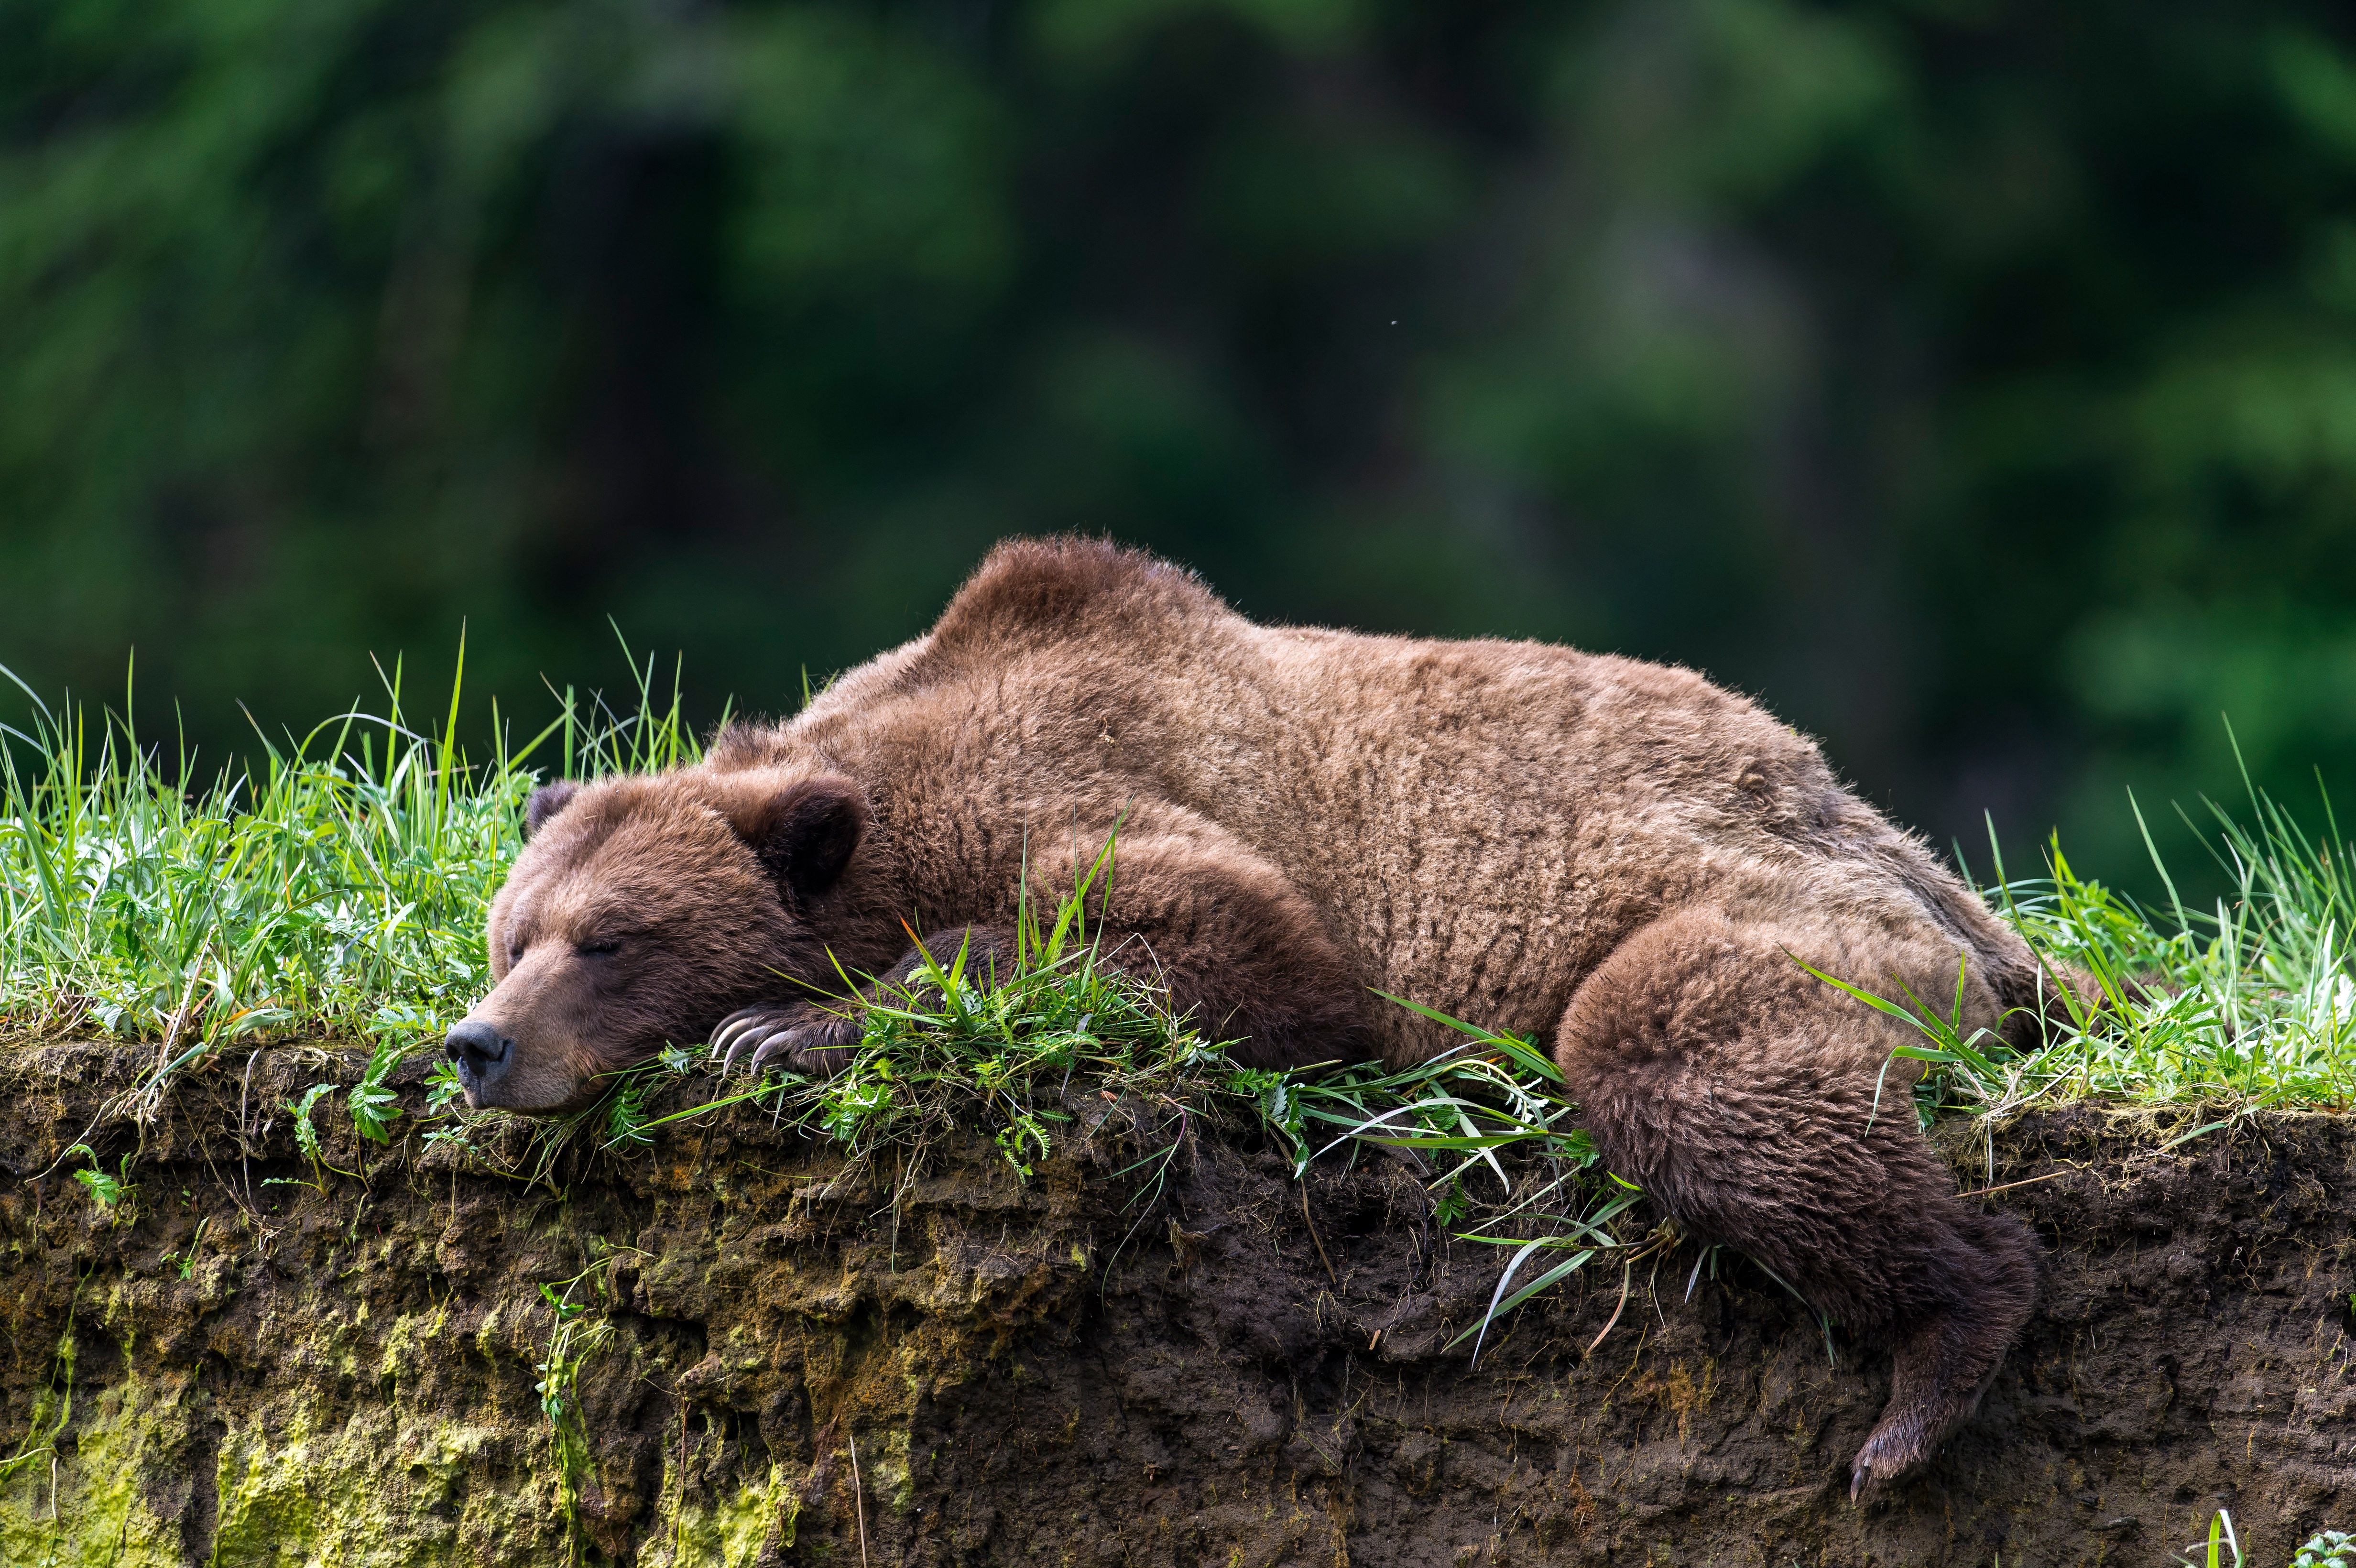 Скачать обои бесплатно Животные, Медведи, Медведь, Спать картинка на рабочий стол ПК